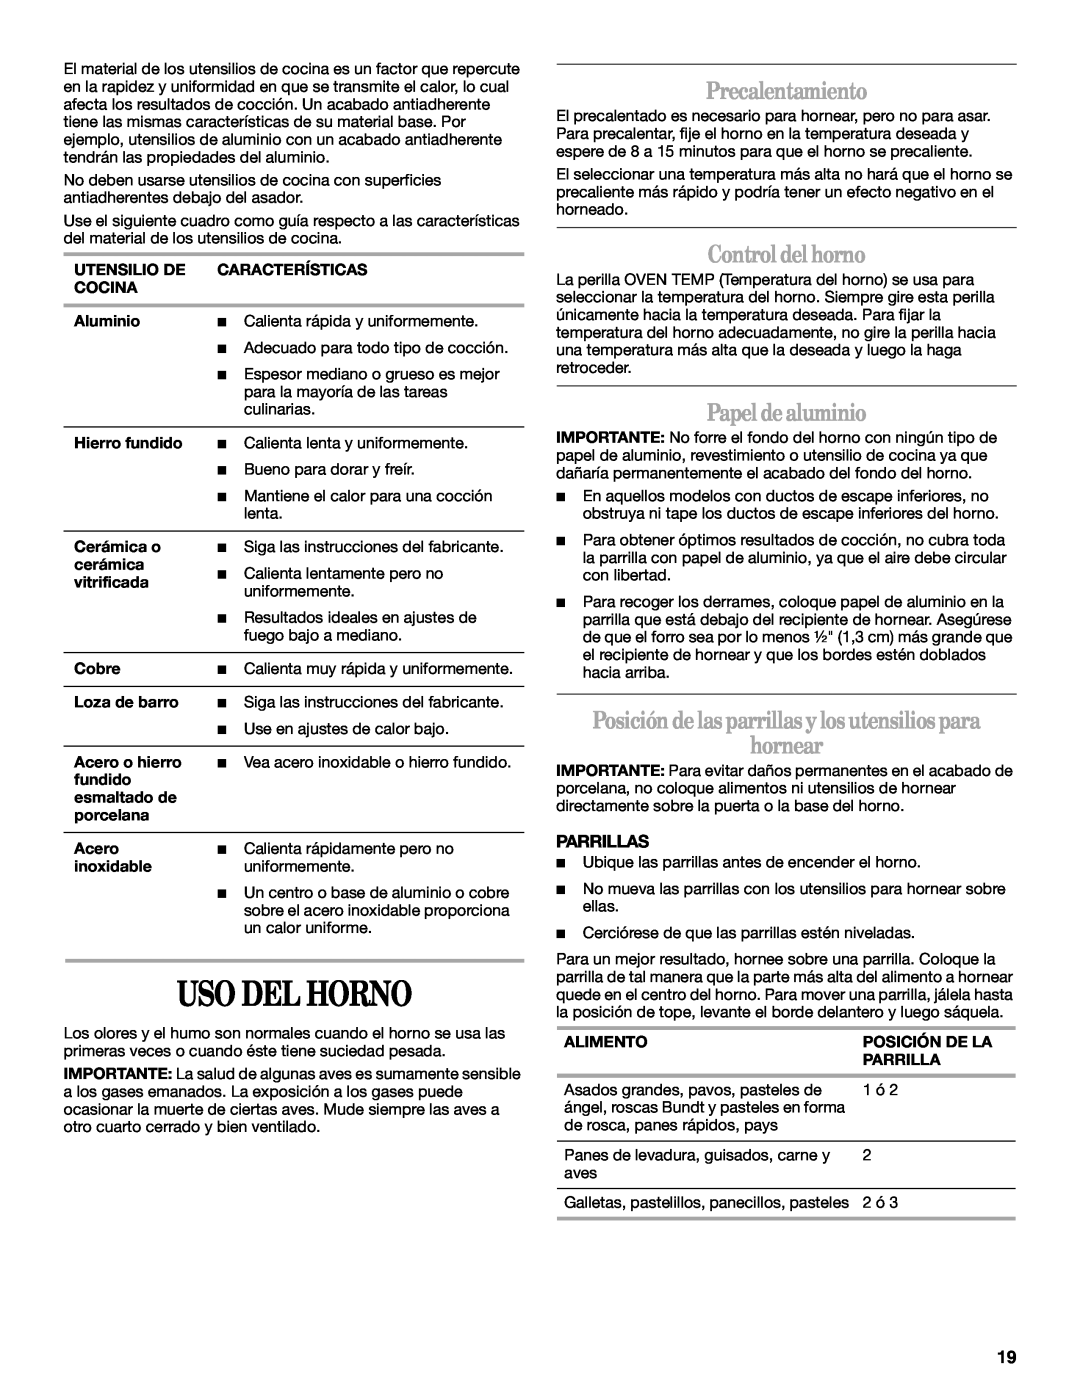 Amana W10181330A manual Uso Del Horno, Precalentamiento, Control del horno, Papel dealuminio, Parrillas 